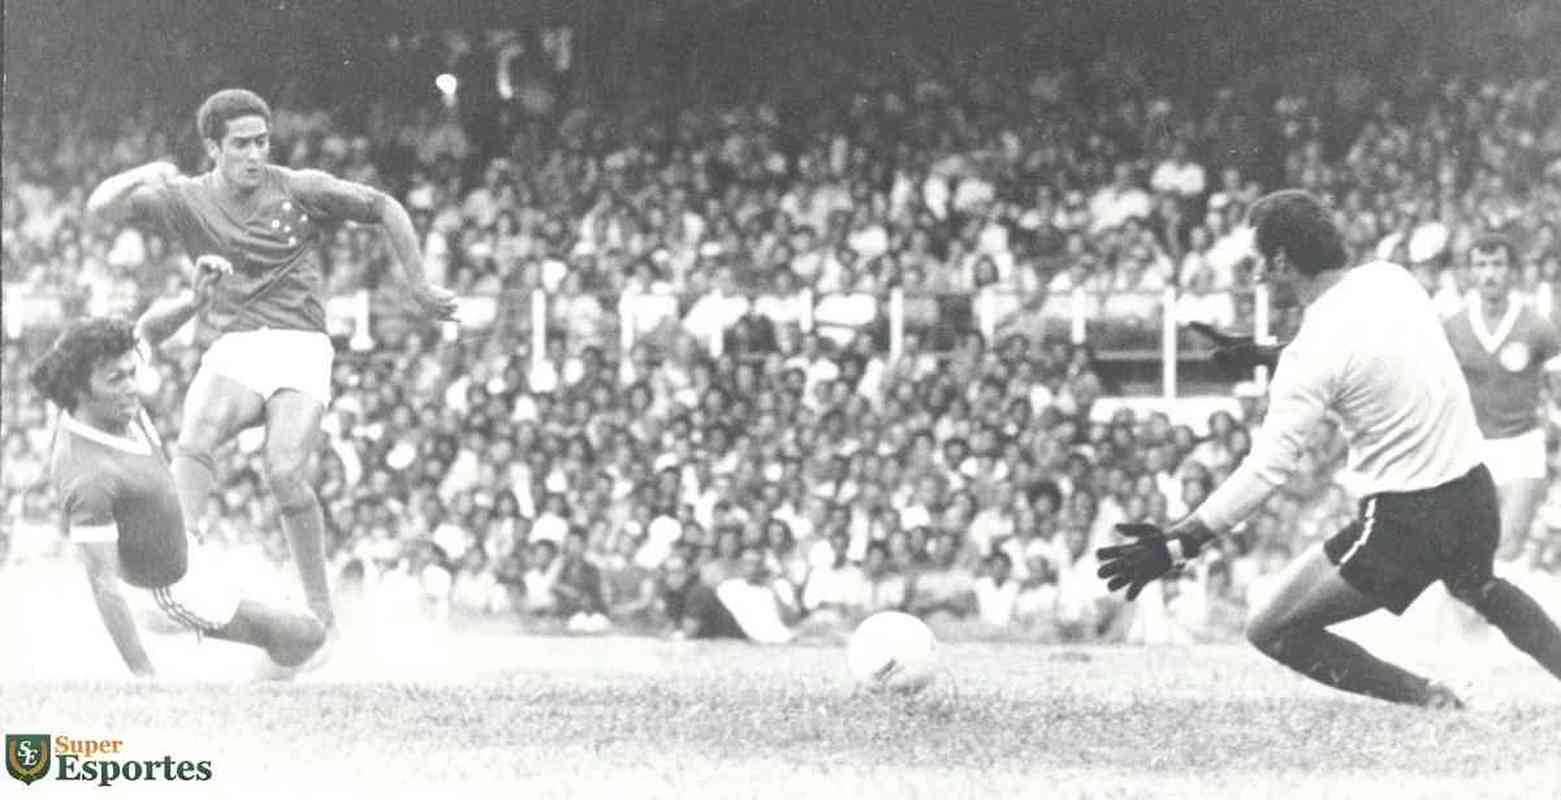 Cruzeiro derrotou Inter por 5 a 4 na estreia da Copa Libertadores de 1976. Palhinha, aos 3 e 10 minutos do 1ºT, Joãozinho, aos 21 min do 1ºT e aos 18 min do 2ºT, e Nelinho, aos 40 min do 2ºT marcaram os gols celestes no triunfo